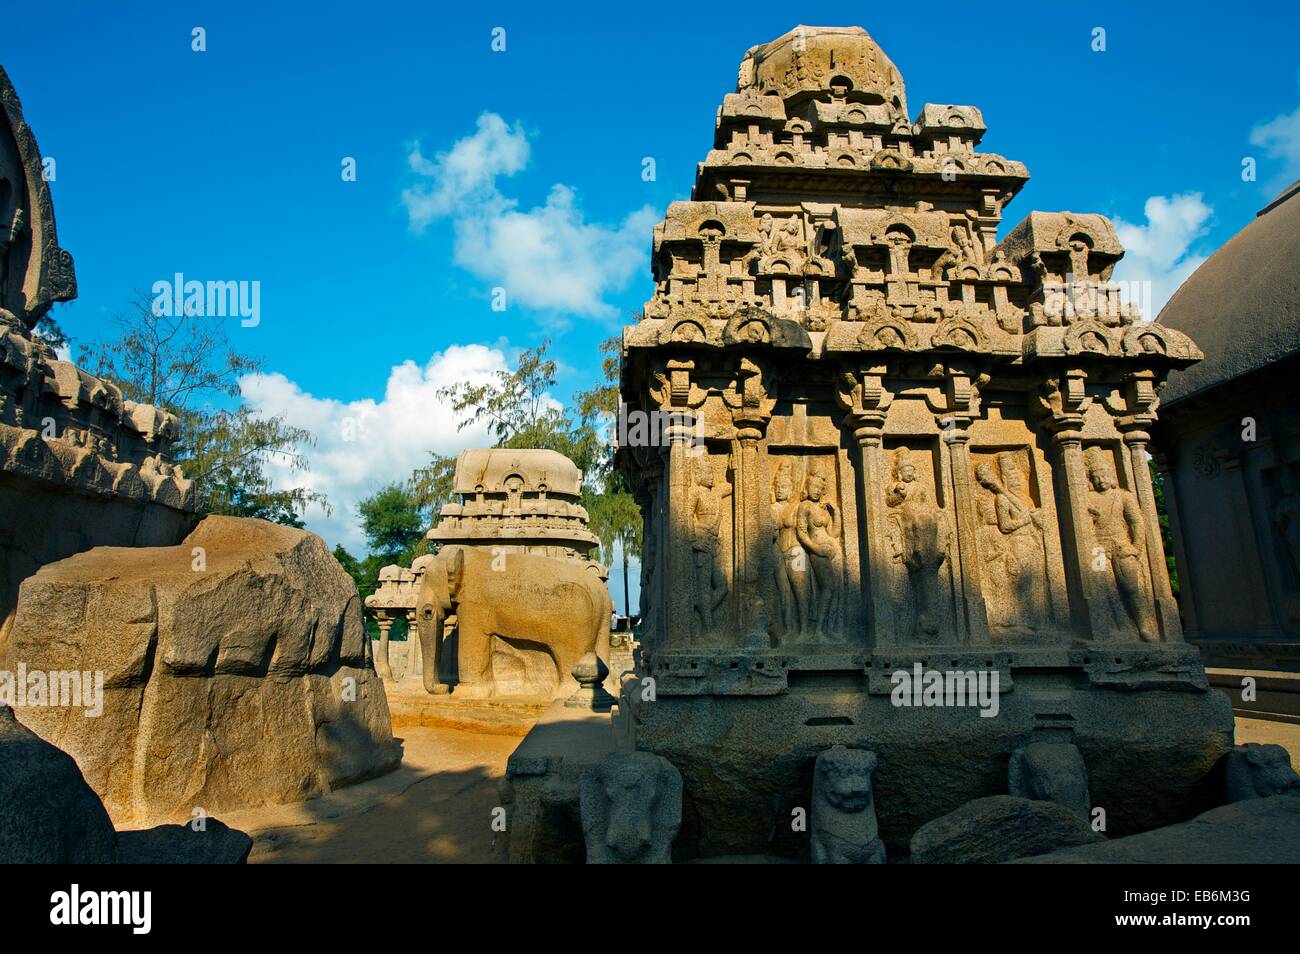 Ricamente tallada Ratha monolítico, los cinco Rathas Mamallapuram Tamilnadu, India. Foto de stock